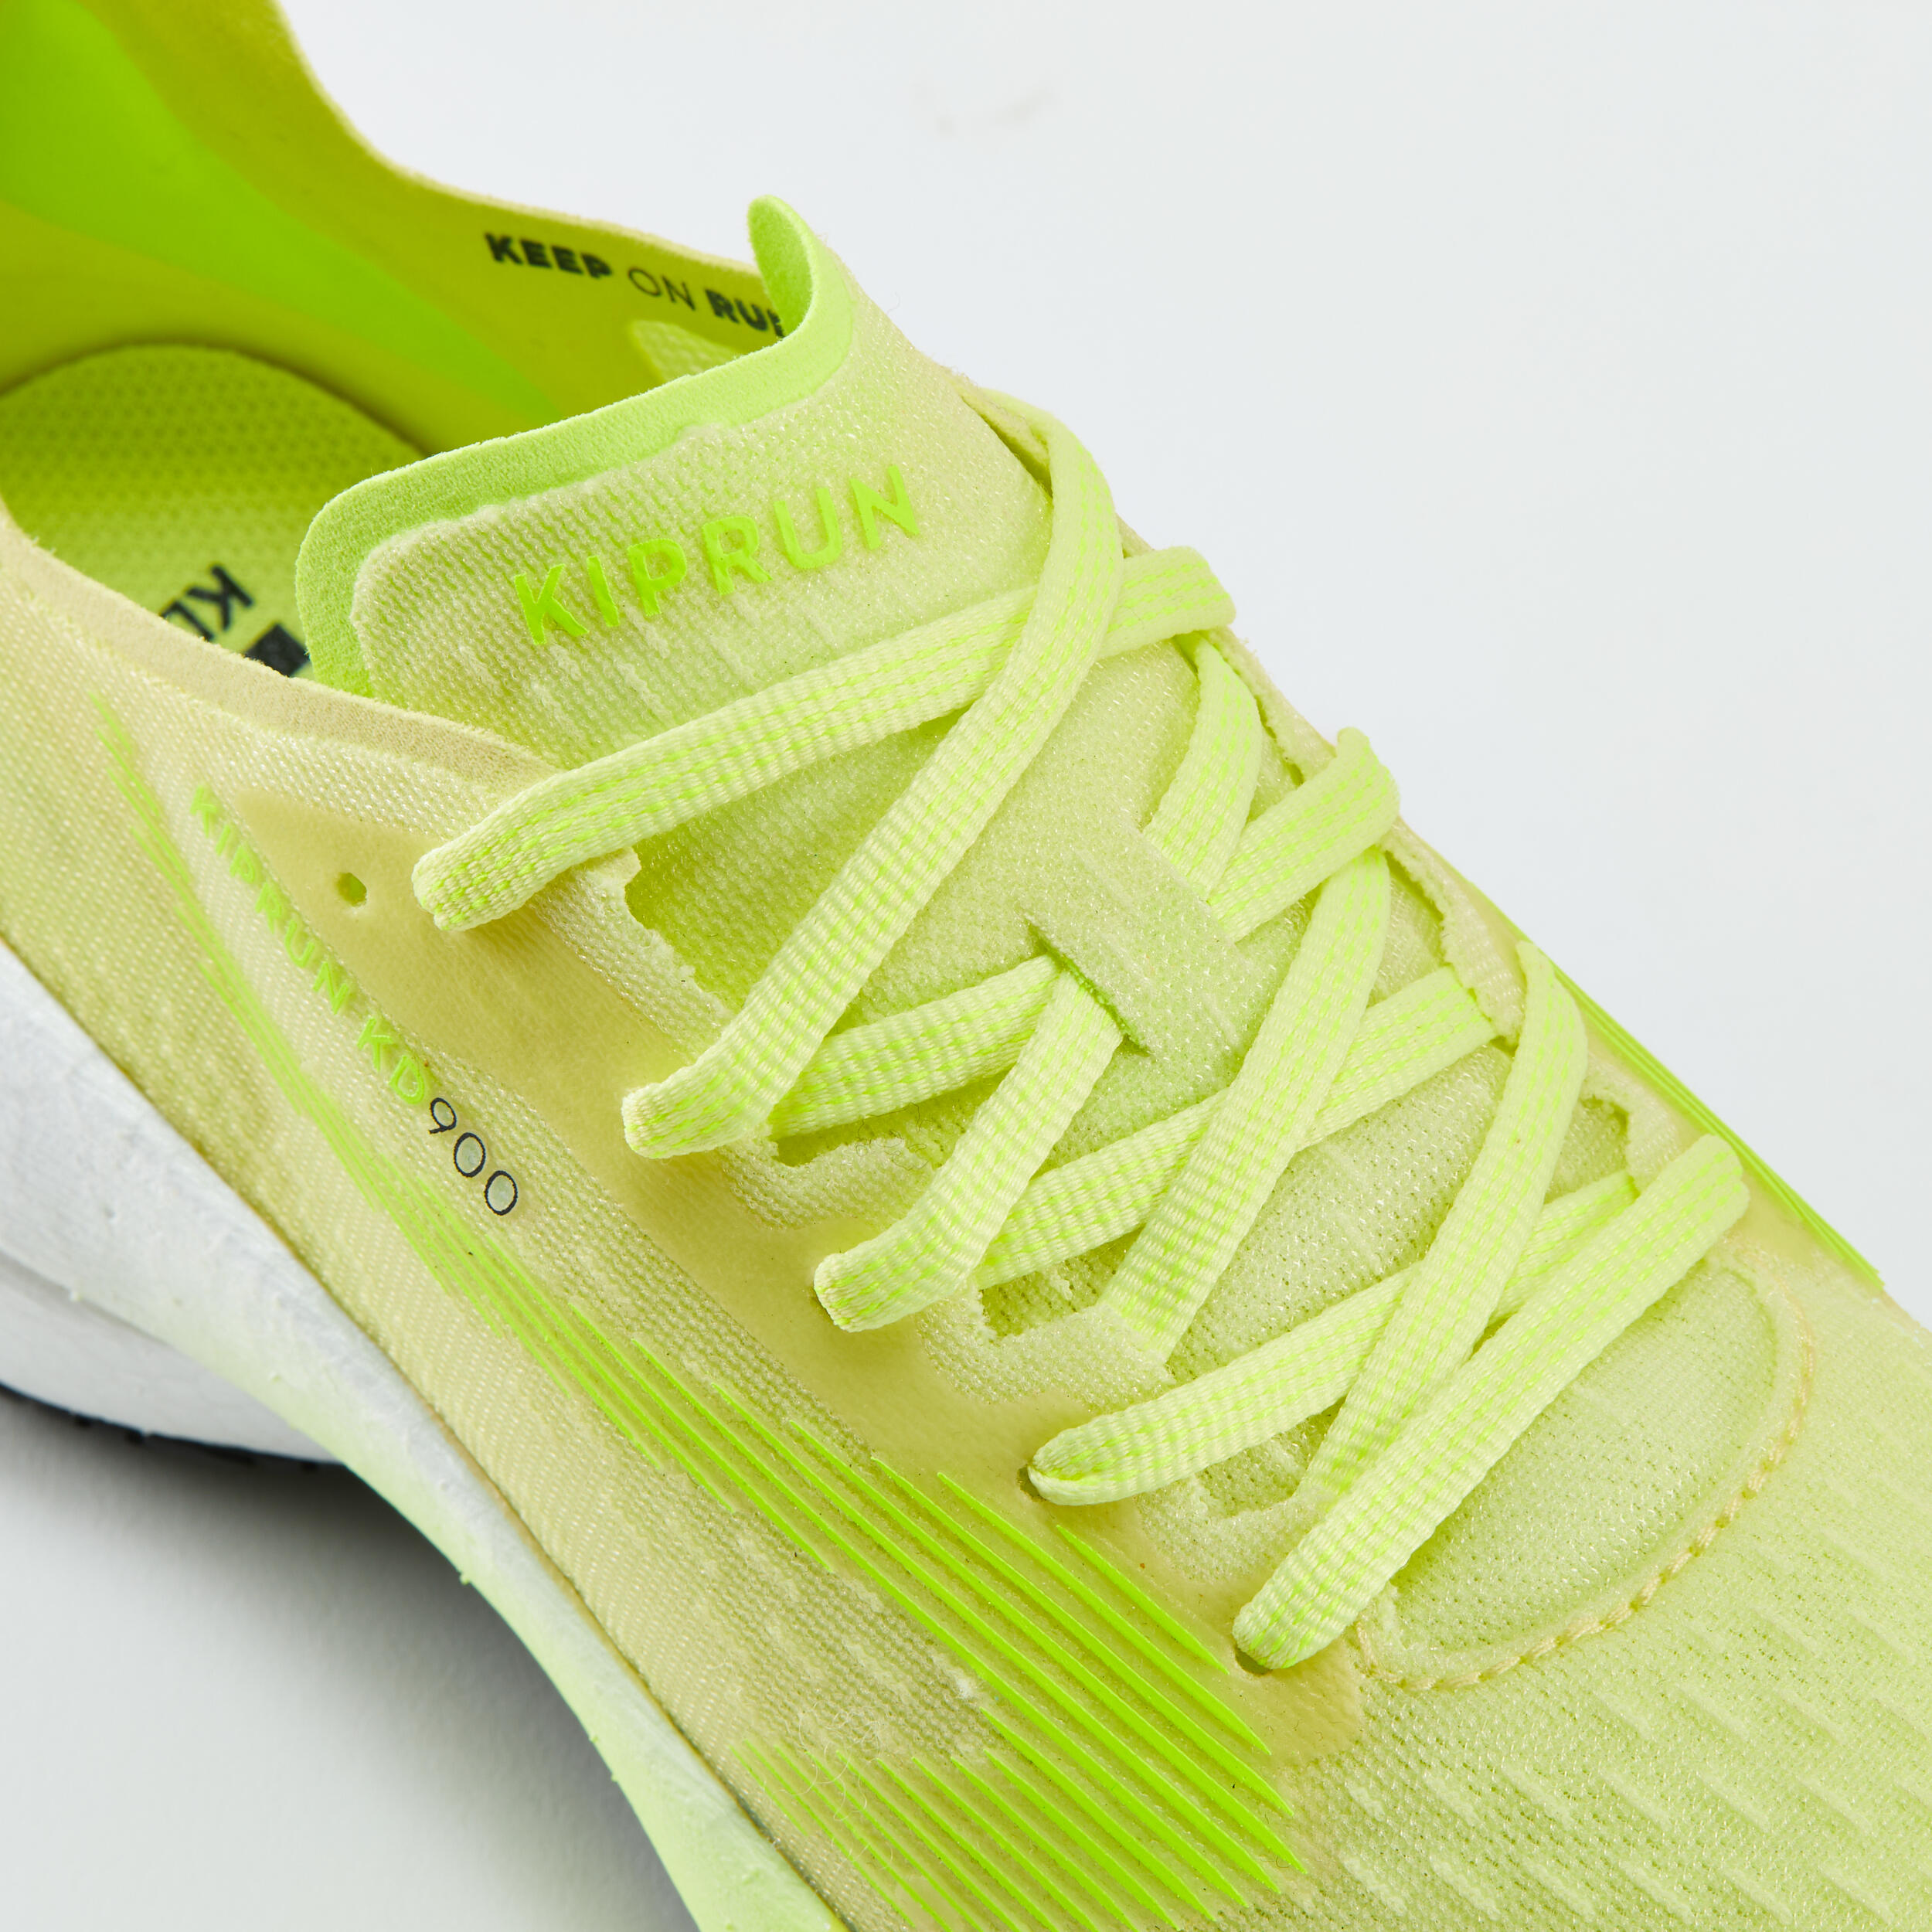 KD900 Women's Running Shoes -Yellow 6/8